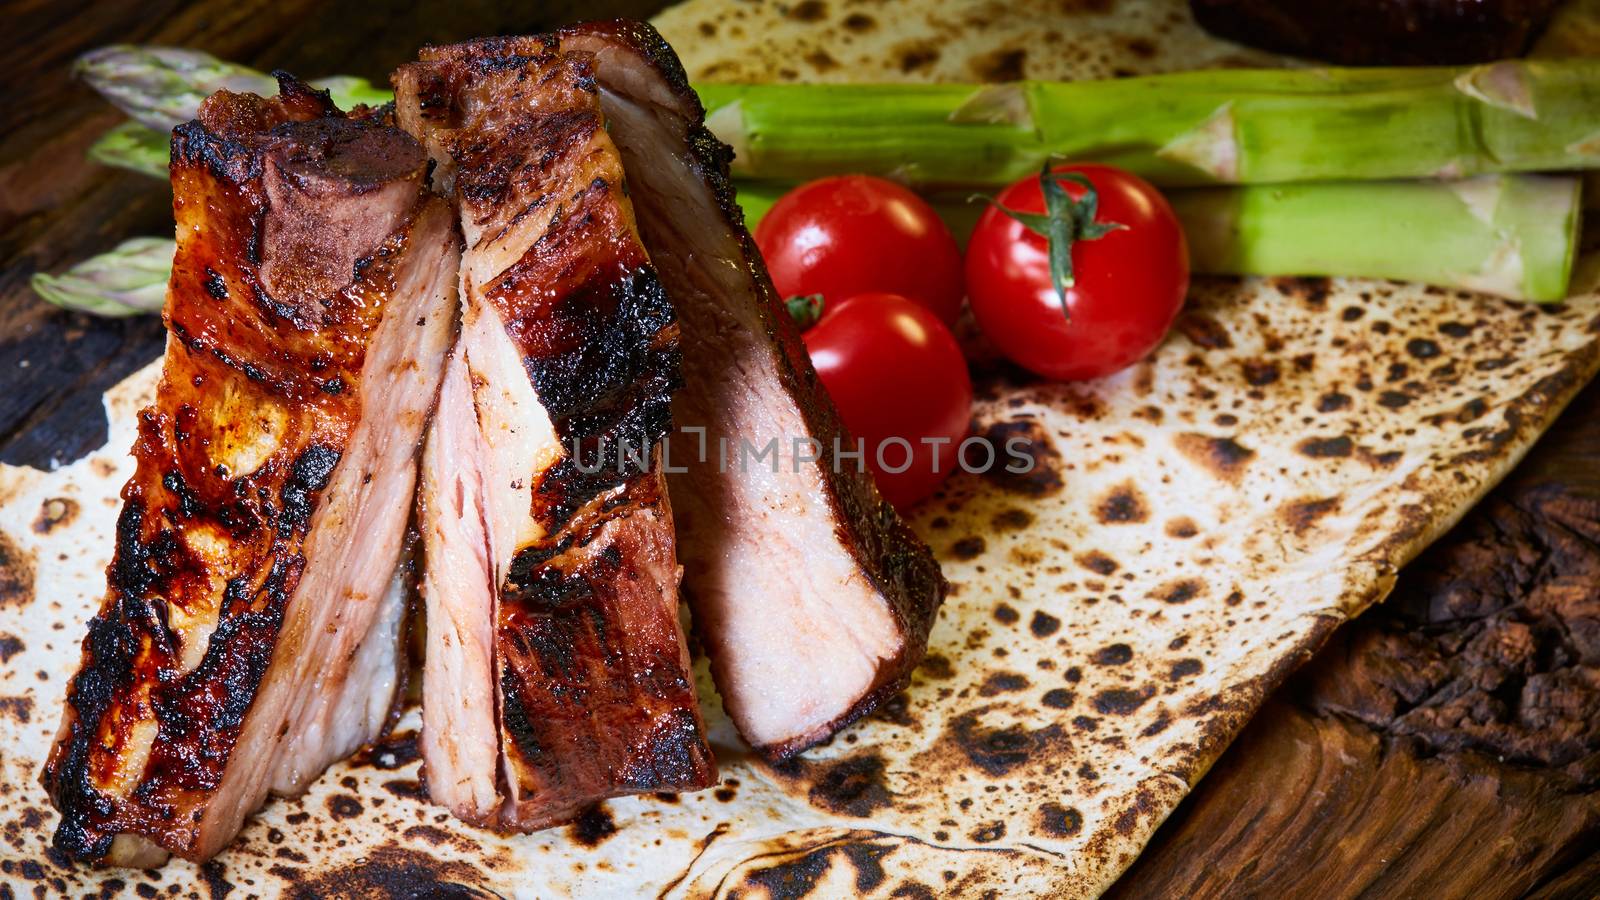 Grilled pork ribs by sarymsakov